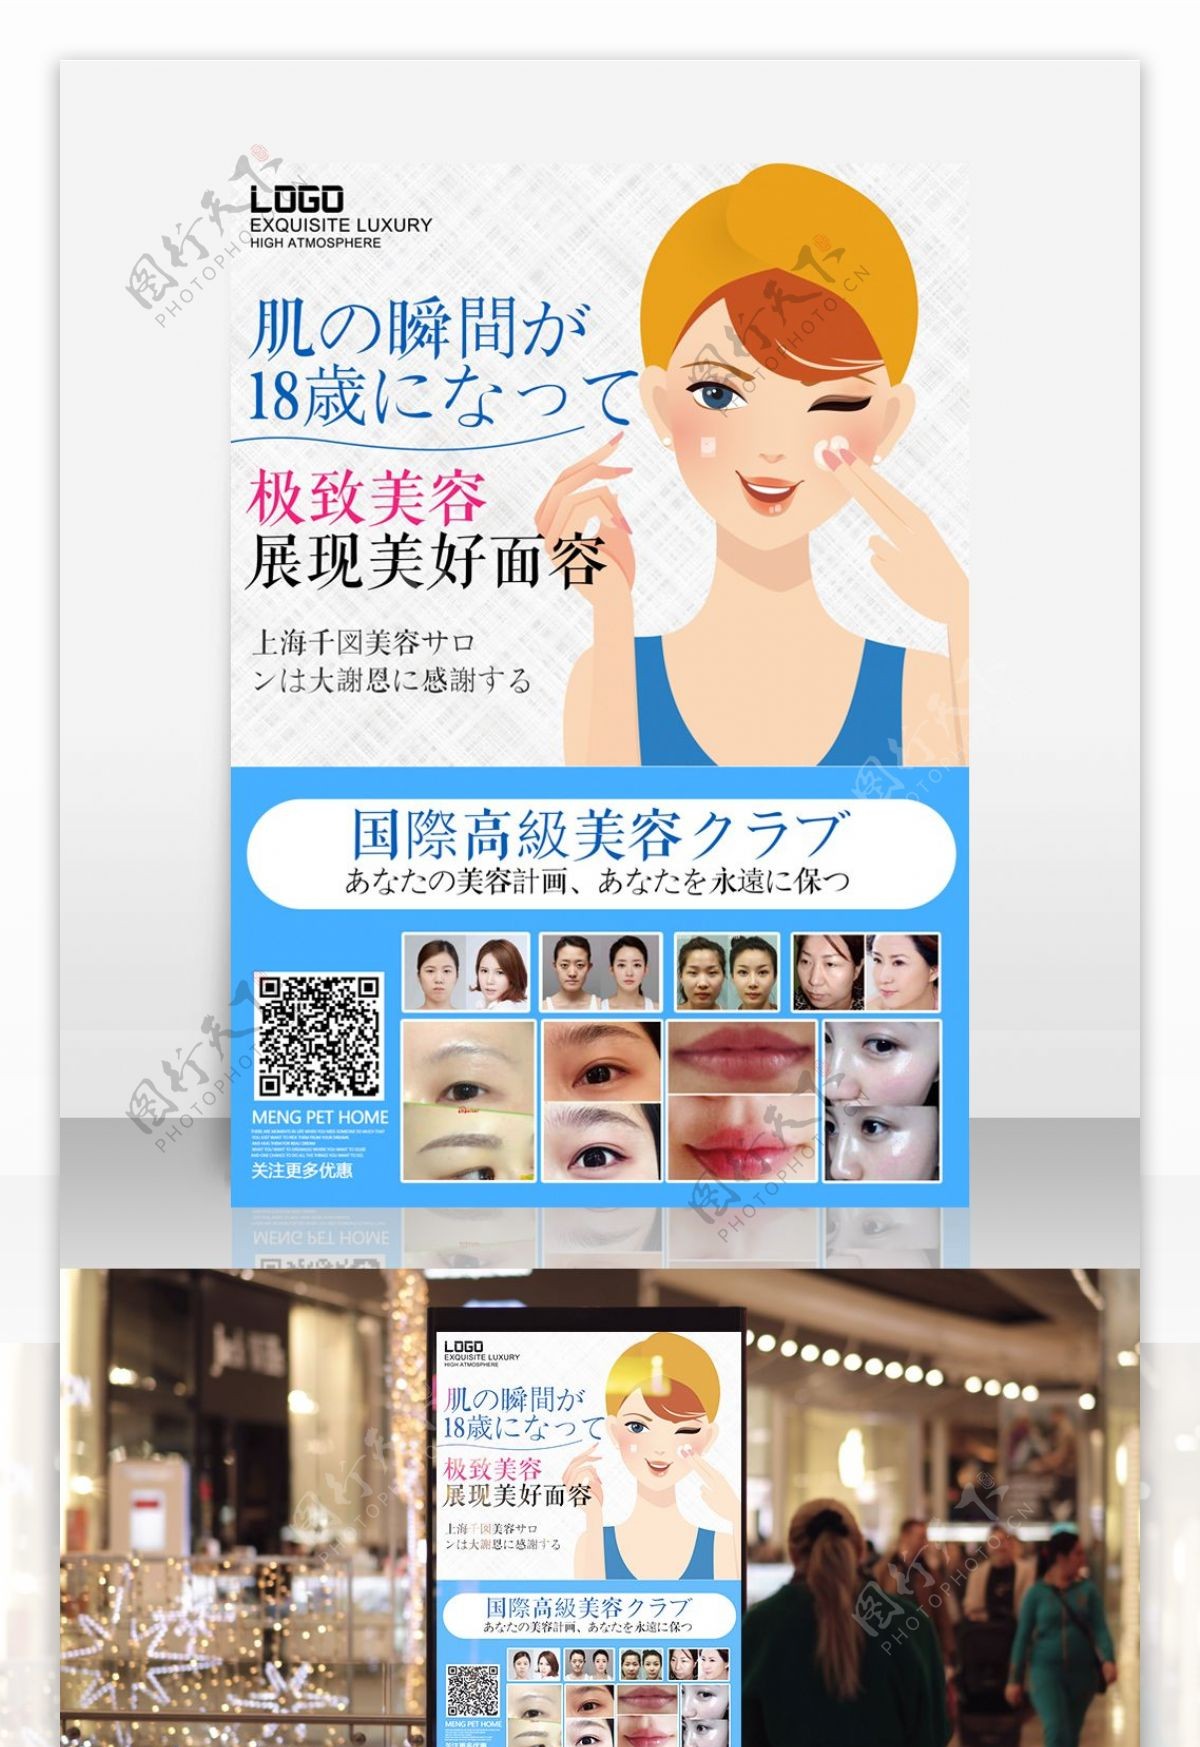 日式风格美容海报面膜包装实用宣传海报设计